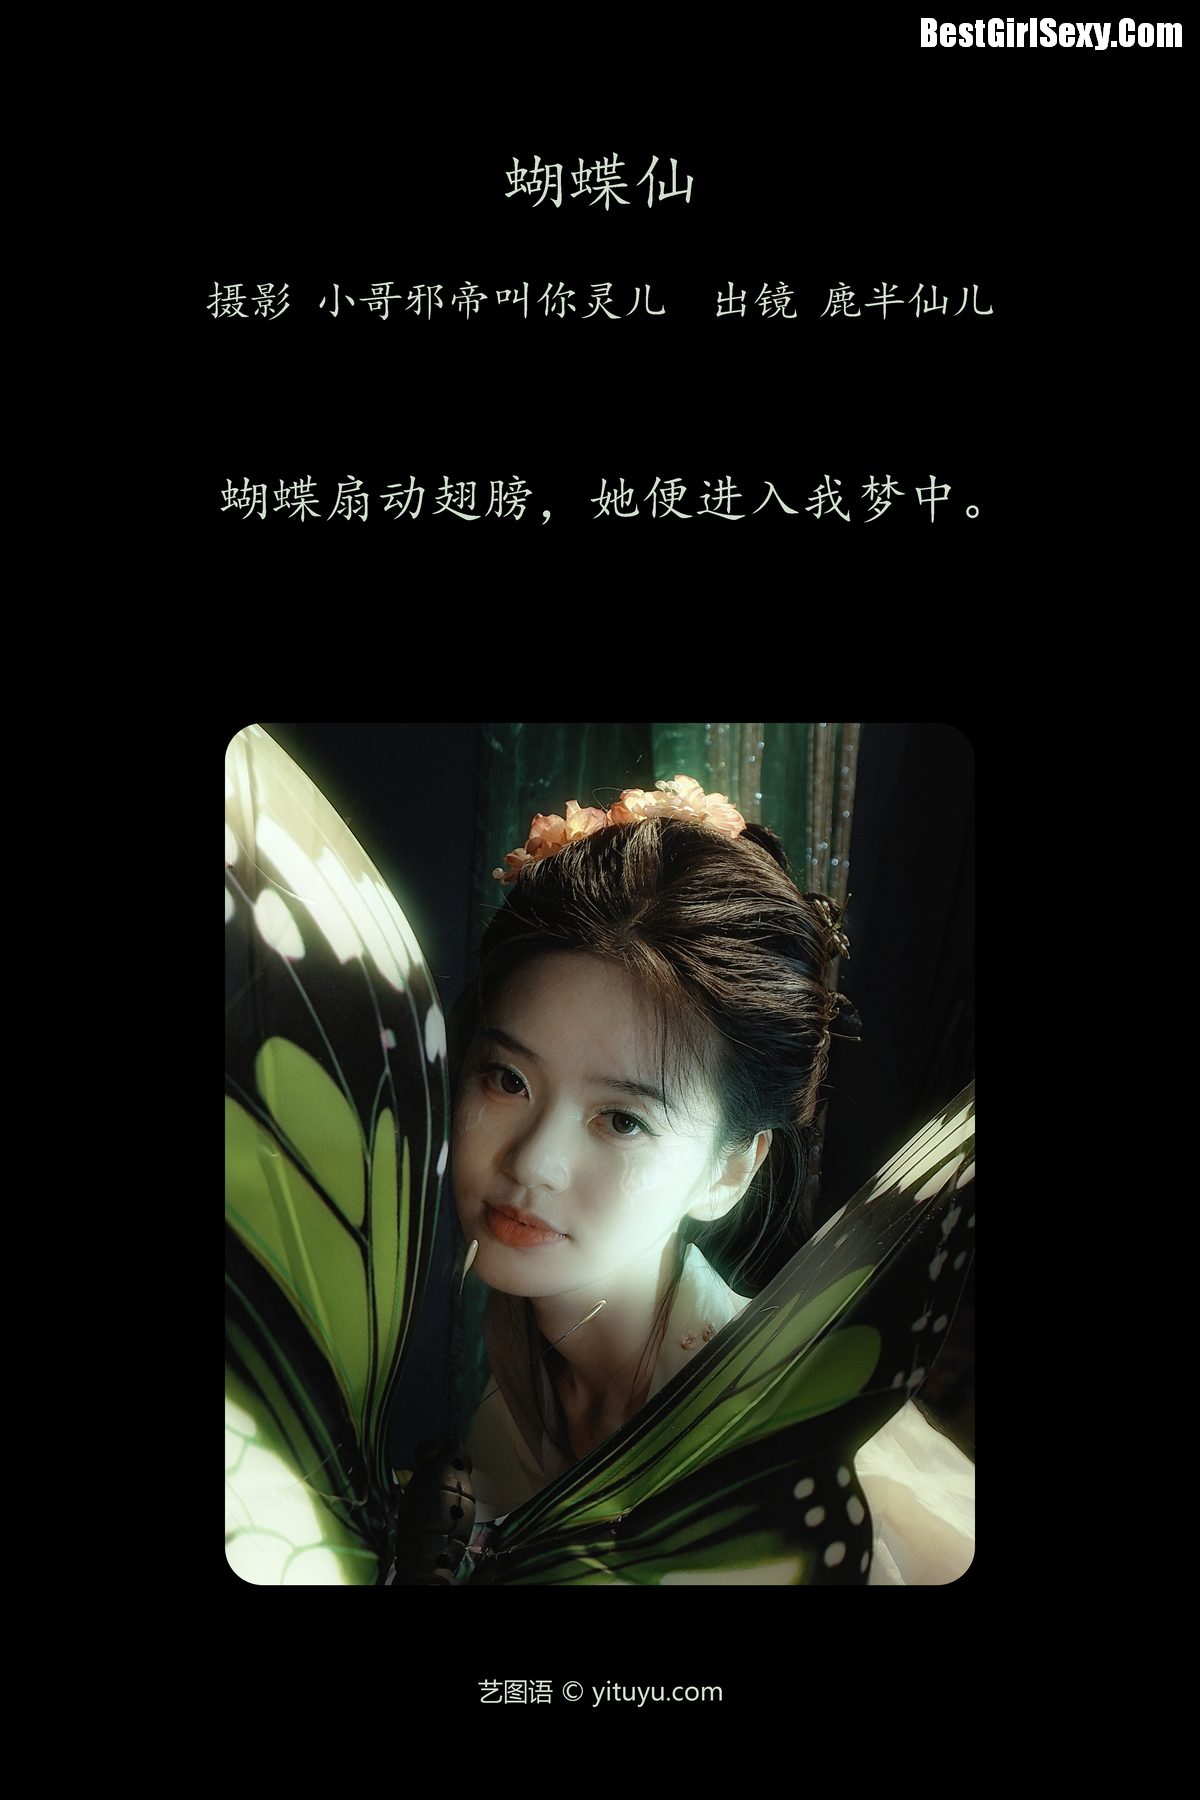 YiTuYu艺图语 Vol 4007 Lu Ban Xian Er 0002 3381321761.jpg